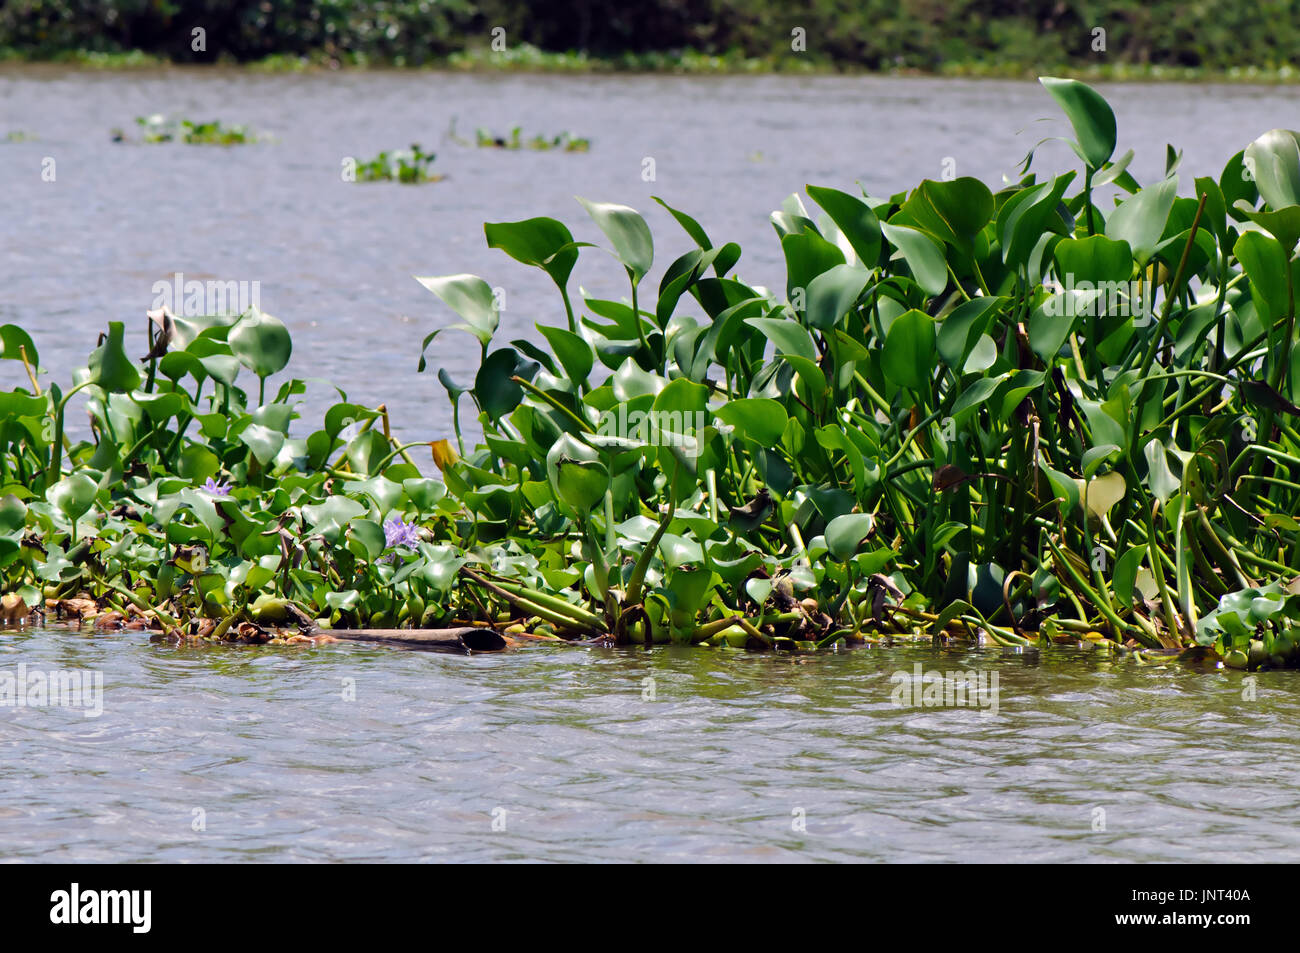 La jacinthe d'eau (Eichhornia crassipes) est en train d'envahir la rivière Sierpe au Costa Rica. Banque D'Images